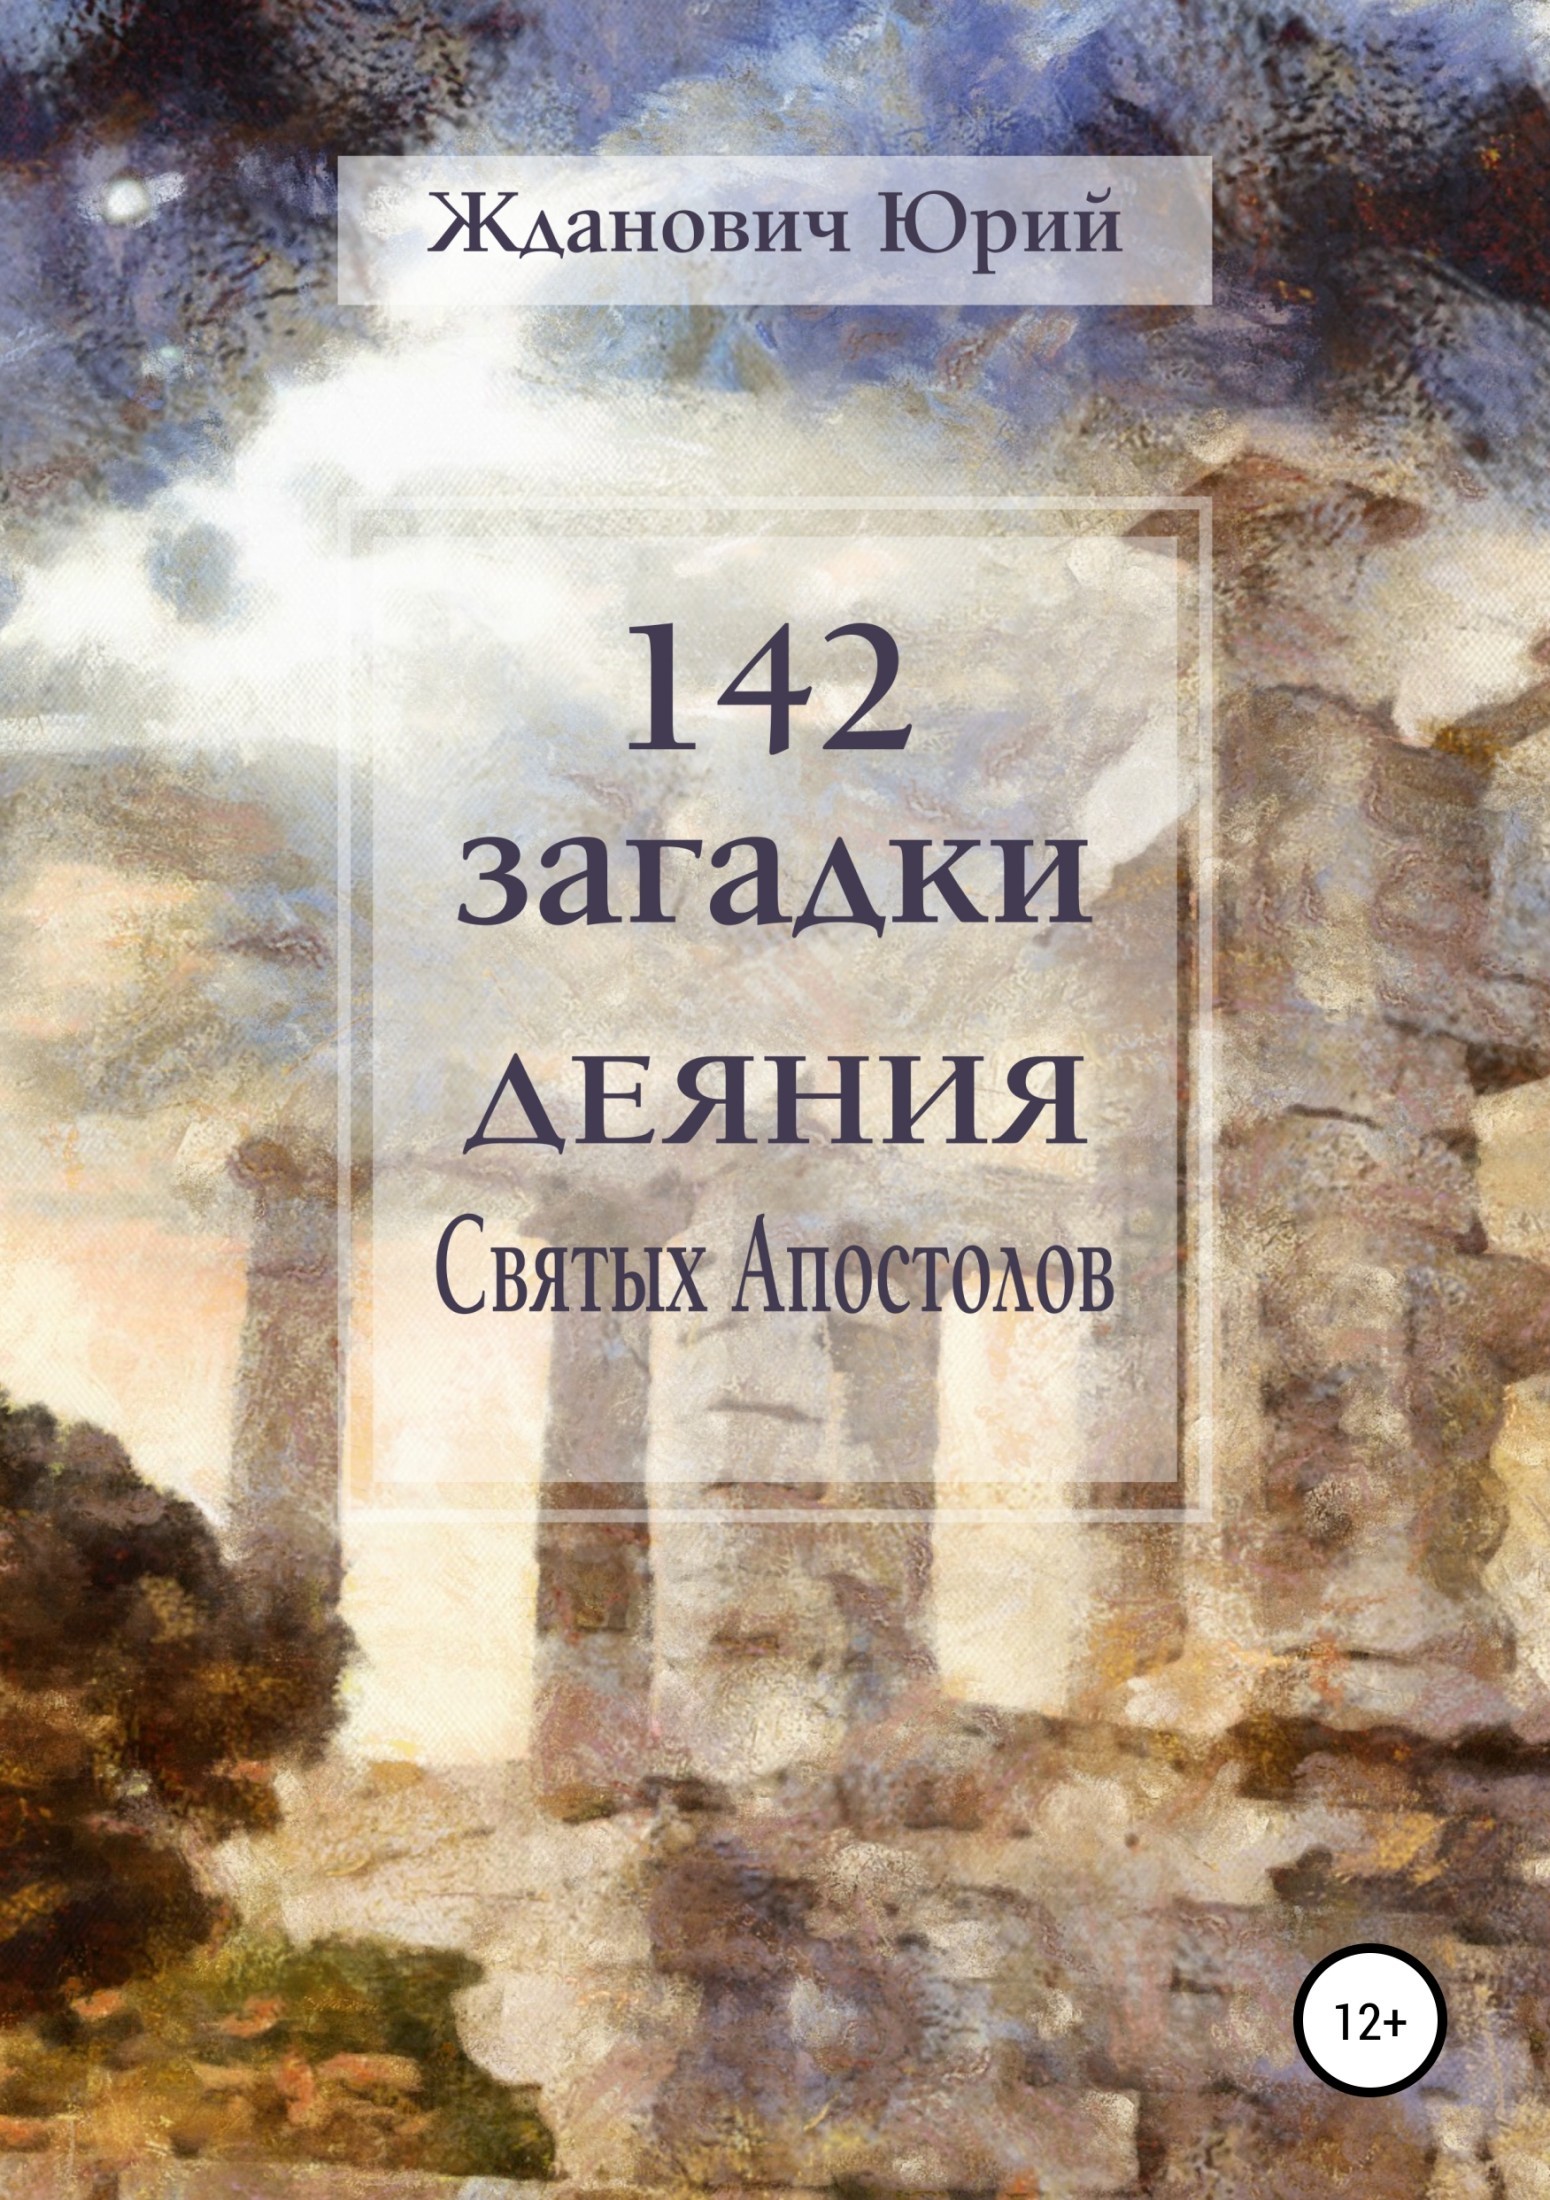 142загадки. Деяния Святых Апостолов